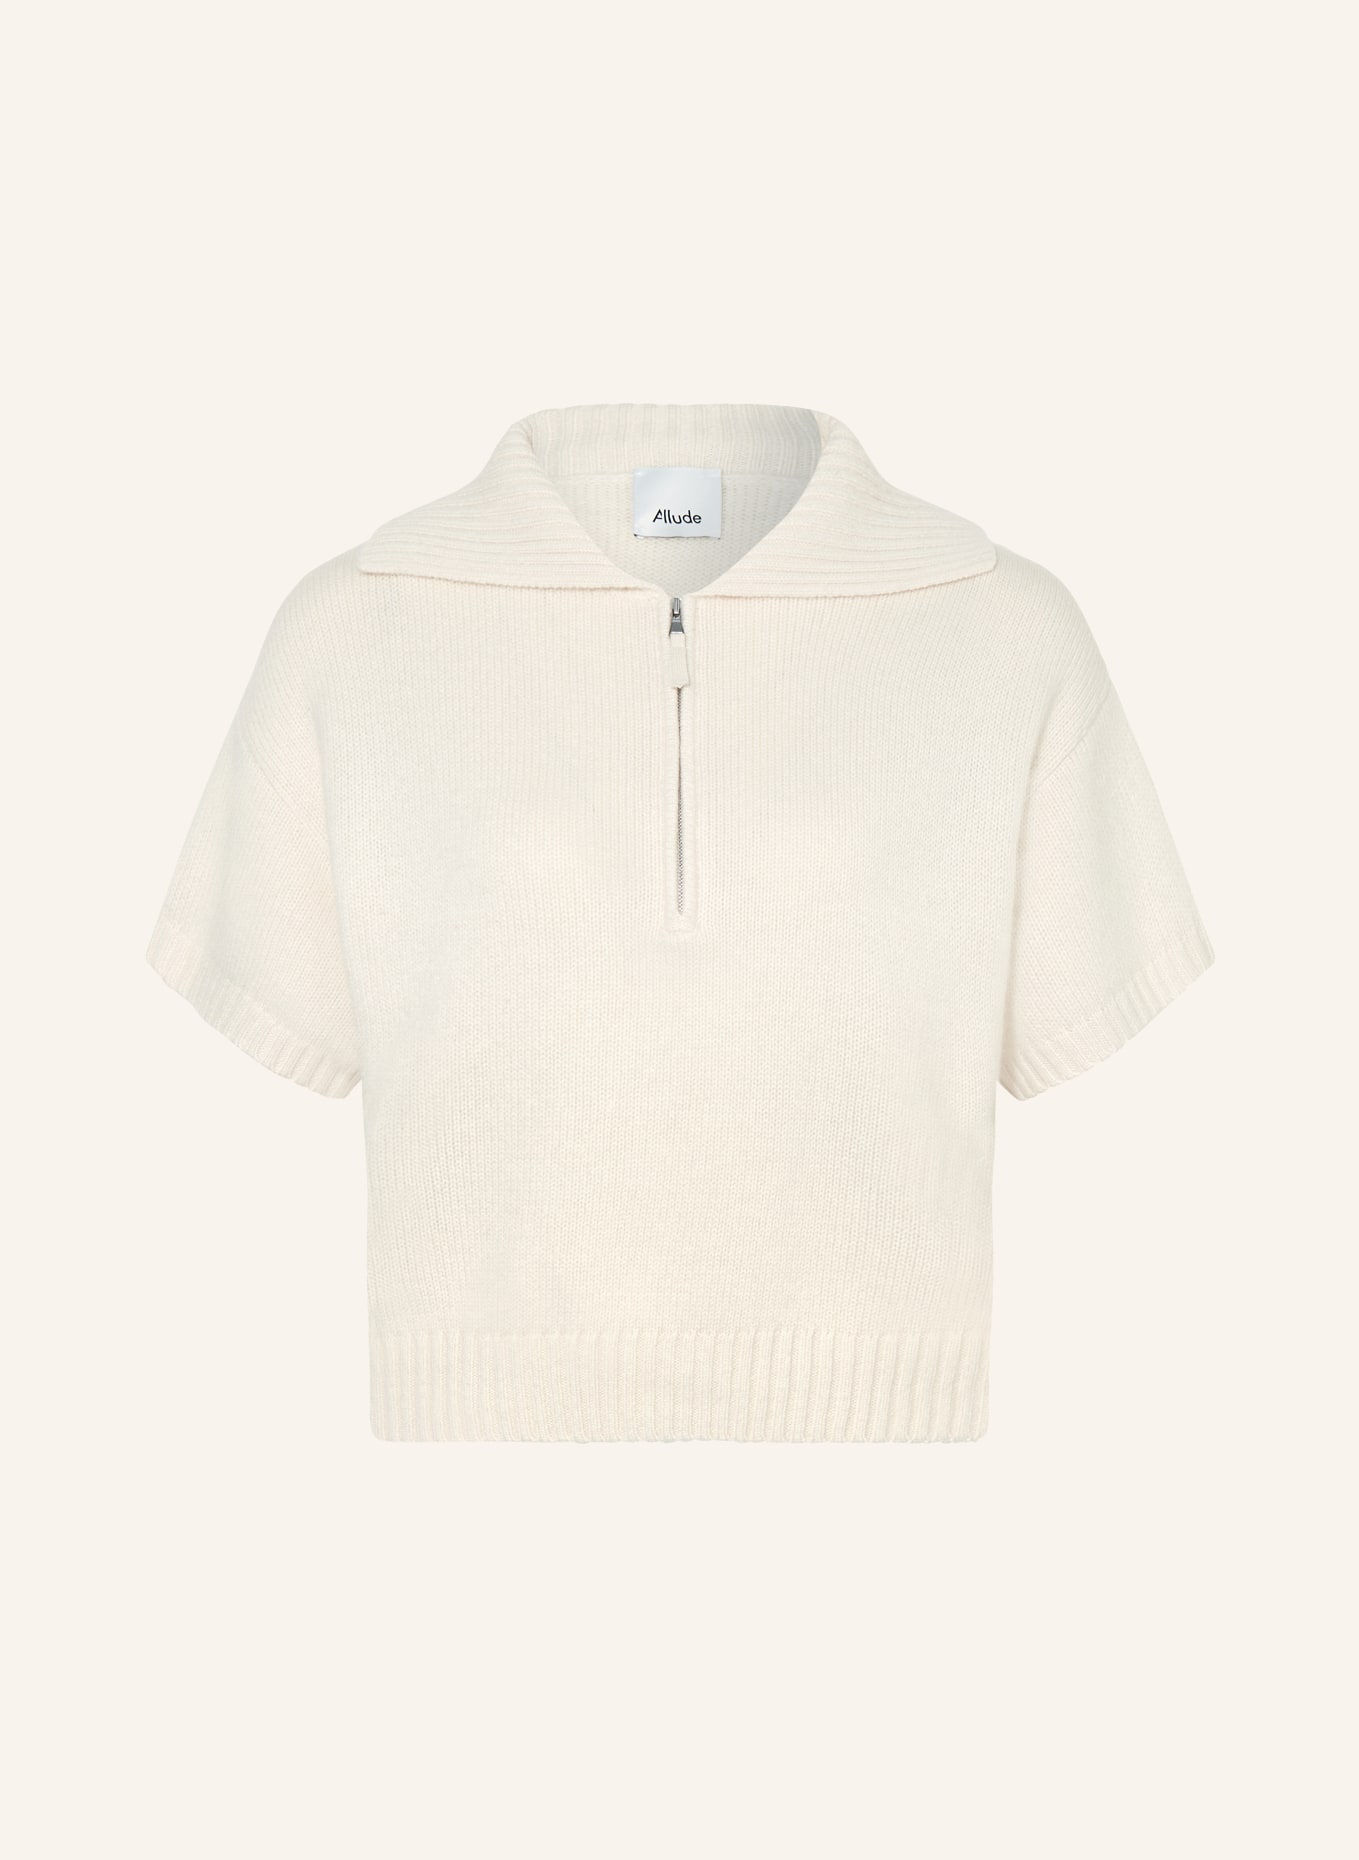 ALLUDE Cashmere half-zip sweater, Color: CREAM (Image 1)